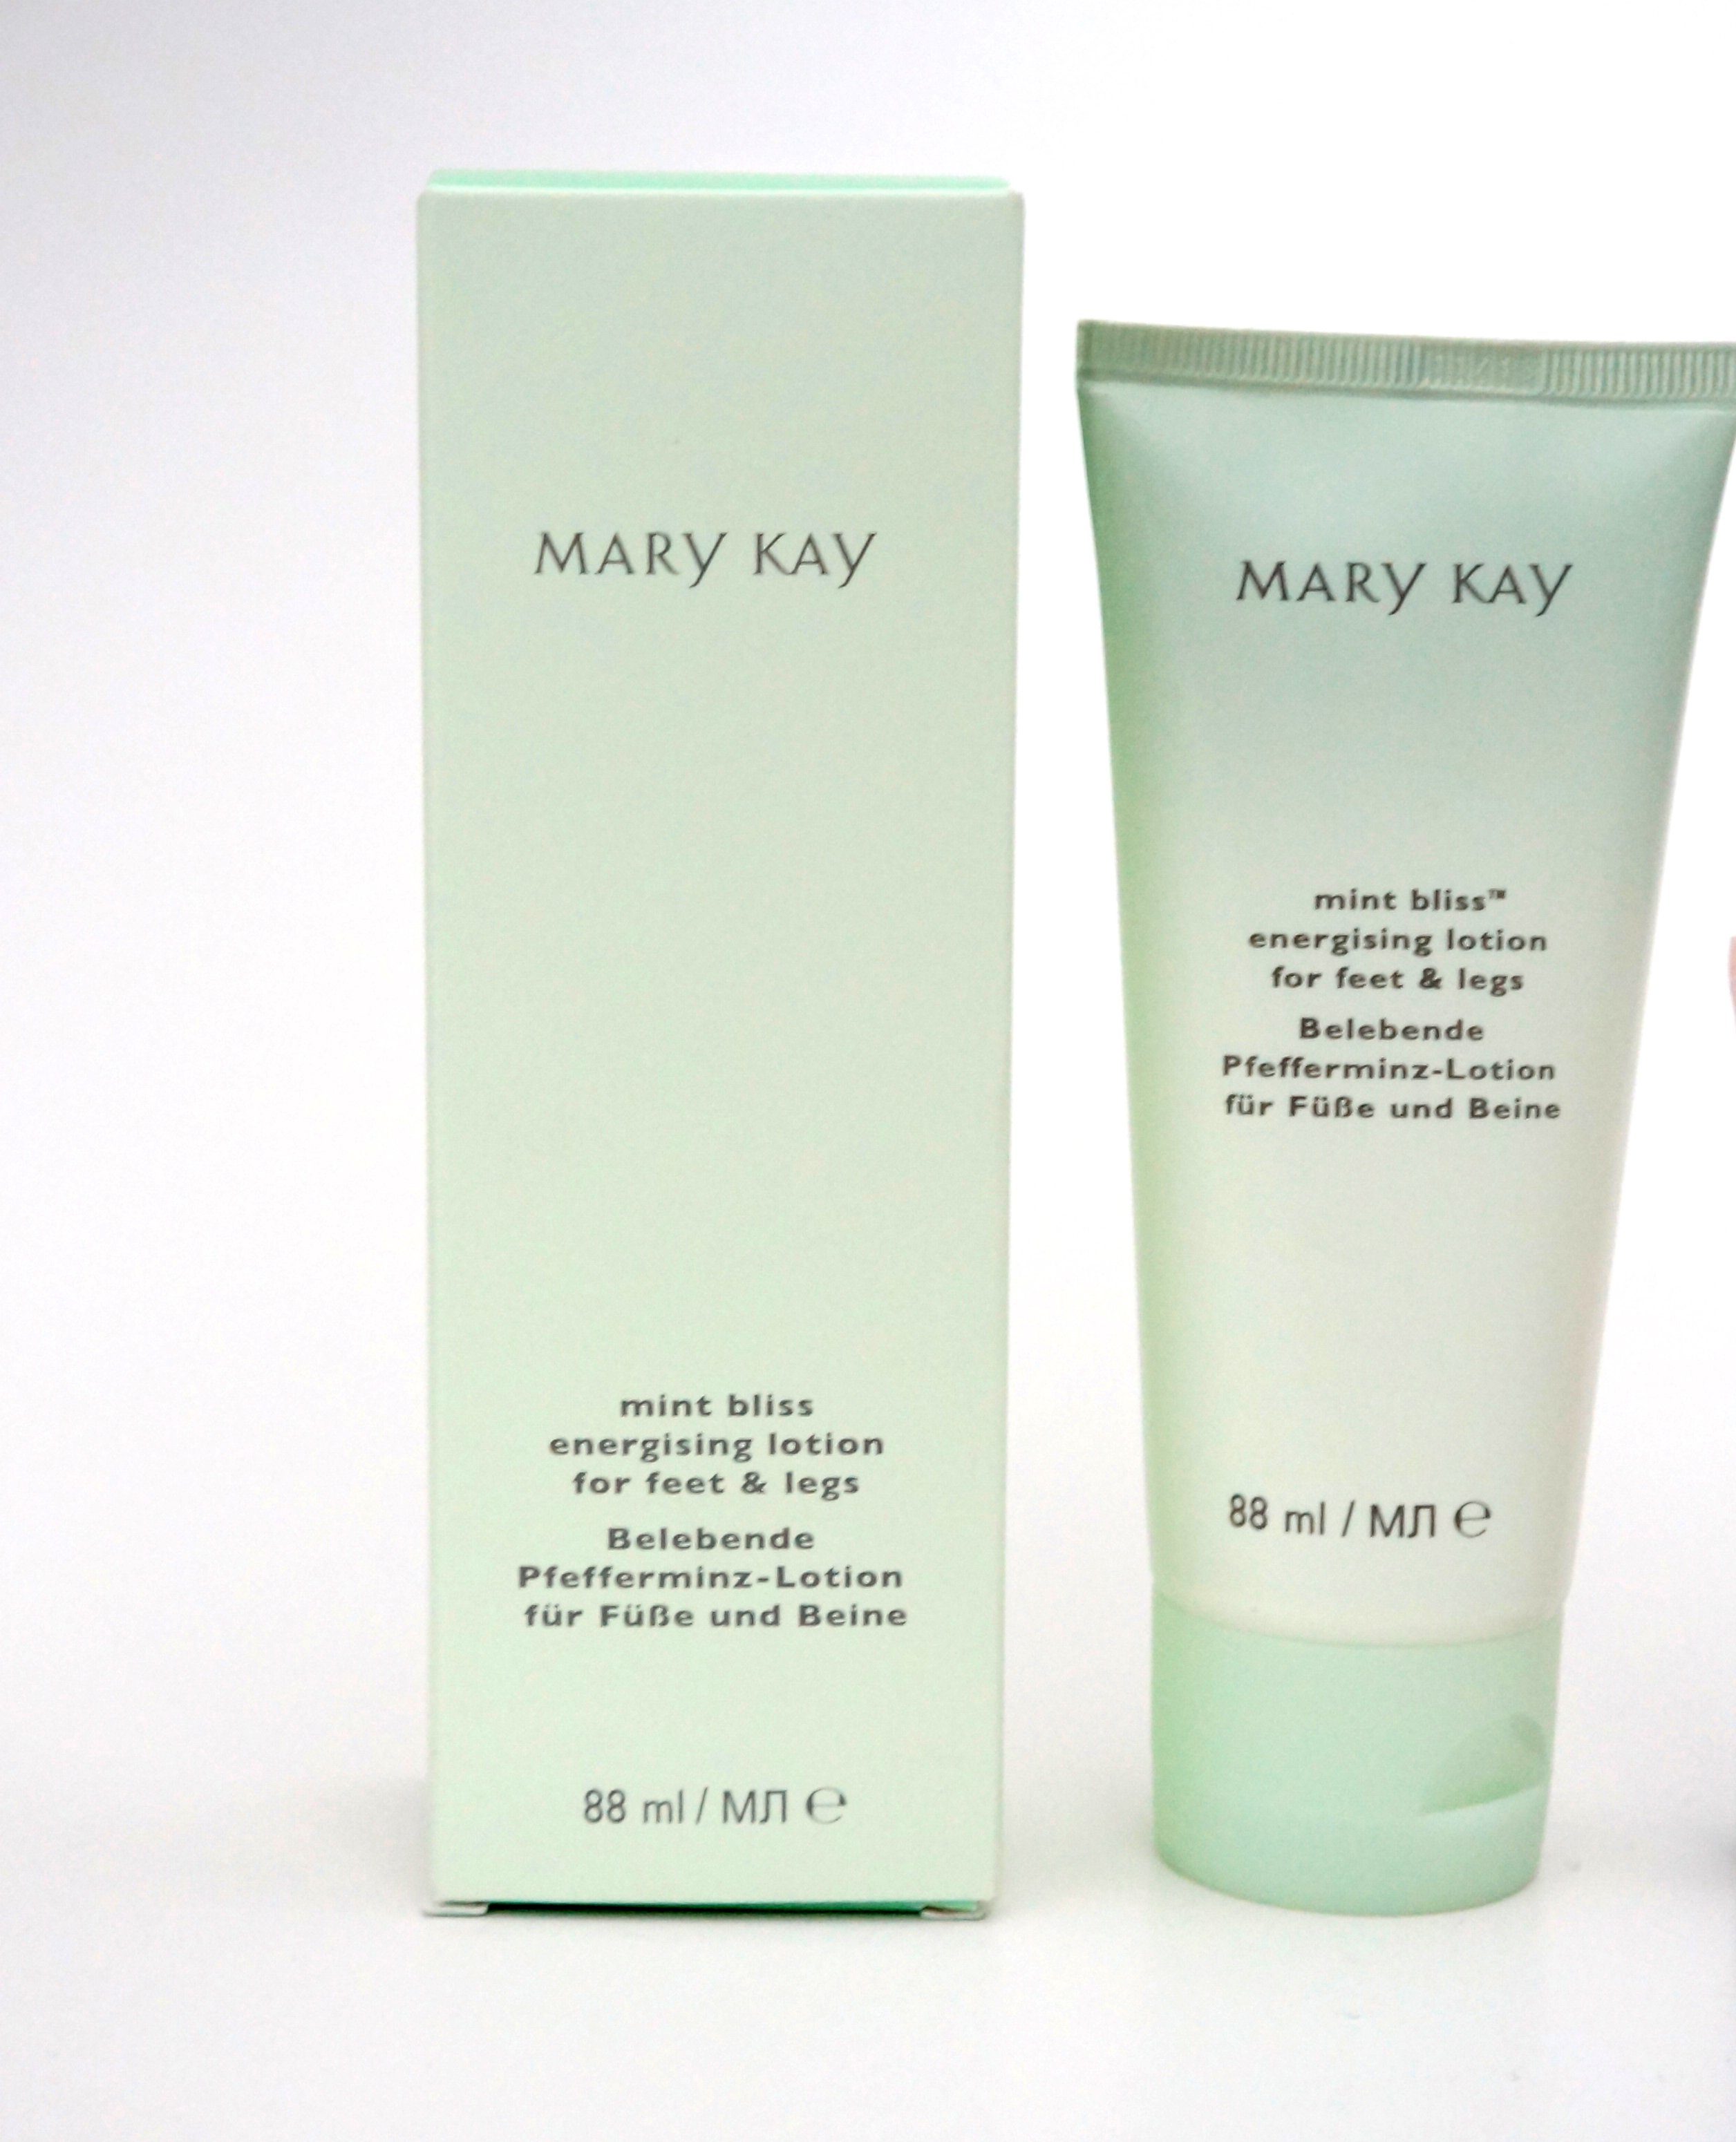 Bliss und Füße Beine Mint Lotion Mary für Kay Mary Fußpflegecreme belebende 88ml Kay